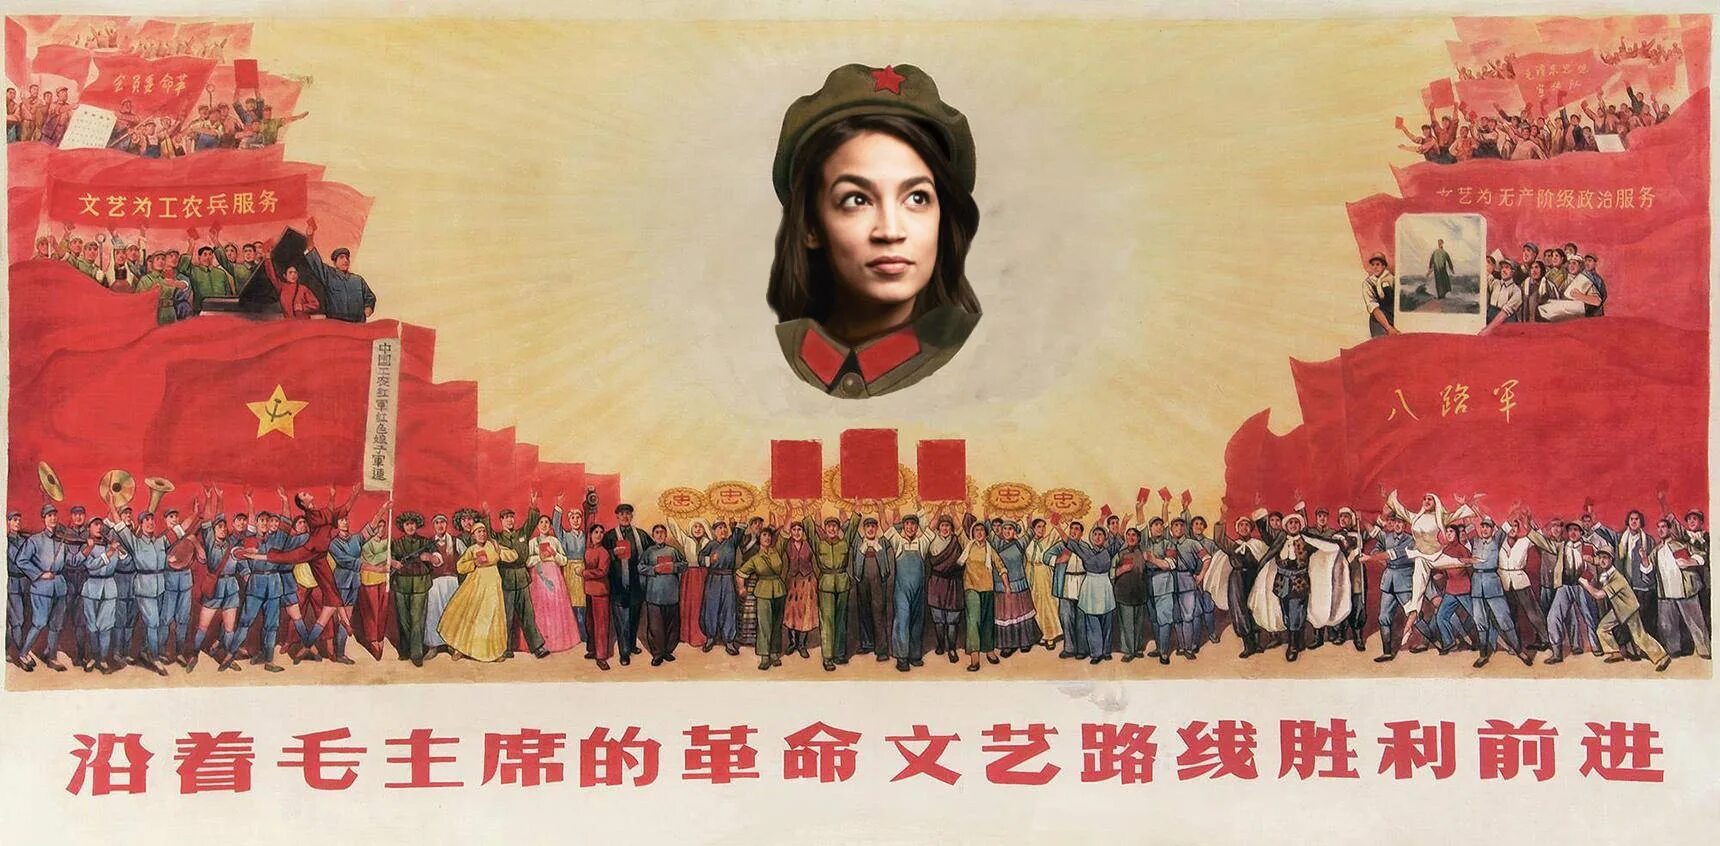 Единая судьба народов. Китай Мао Цзэдун. Коммунистическая партия Китая Мао Цзэдун. Мао Цзэдун пропаганда плакат. Большой скачок Мао Цзэдуна.